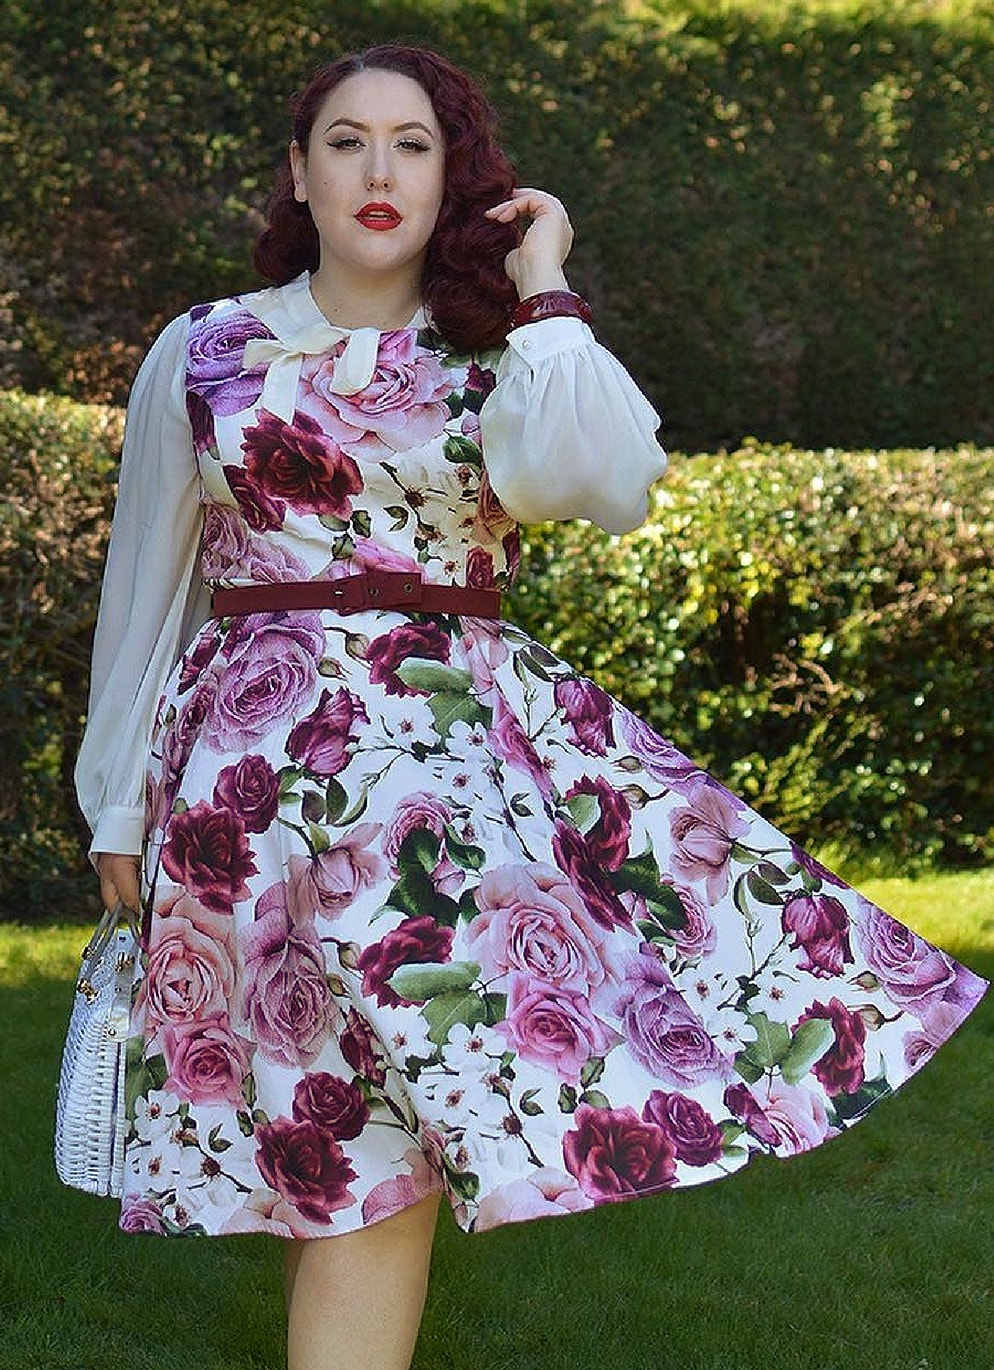 Hearts and Roses 50's Retro Vintage Kleid Alice Floral Swing Dress in Creme & Lila 50er Jahre Petticoat Damenkleid Blumen Rosen Geblümt Hochzeitsgast Sommerkleid